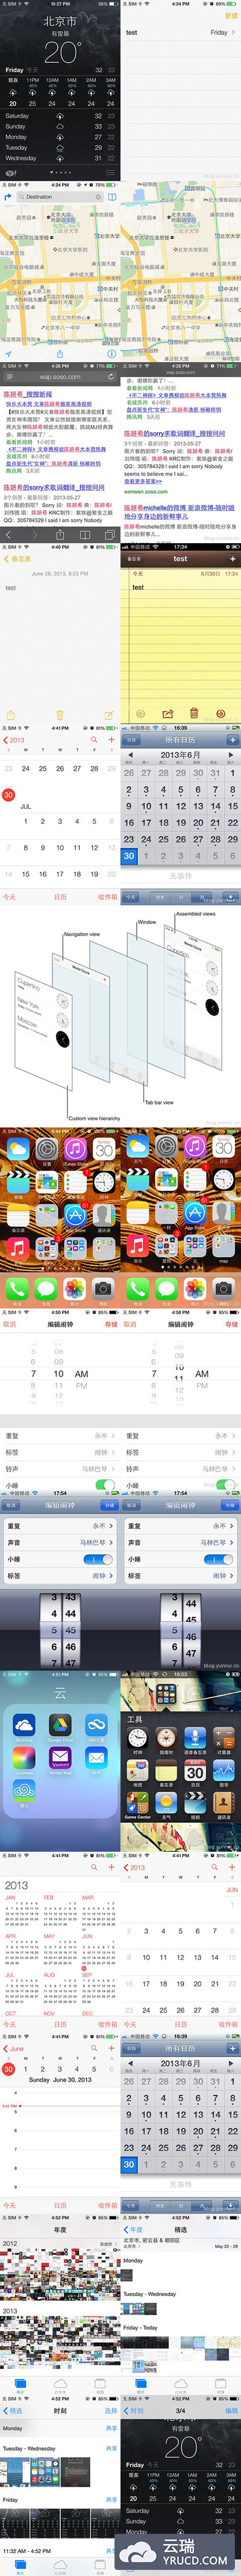 [转]管中窥豹——通过iOS 人机交互指南的变化看iOS7的设计理念